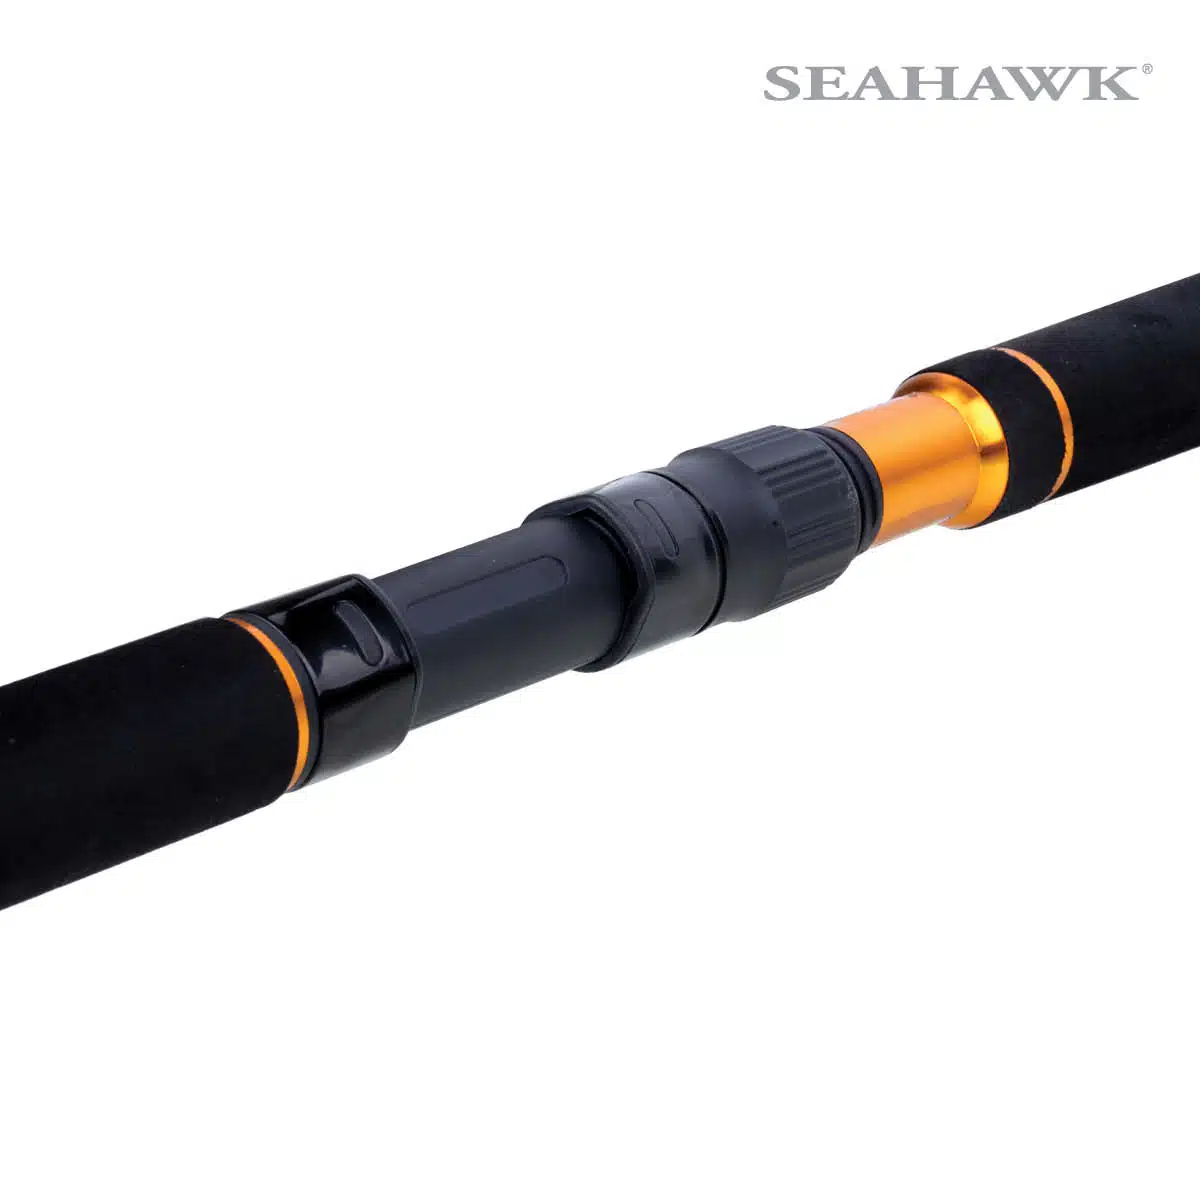 Seahawk Atlas GT Popper 02